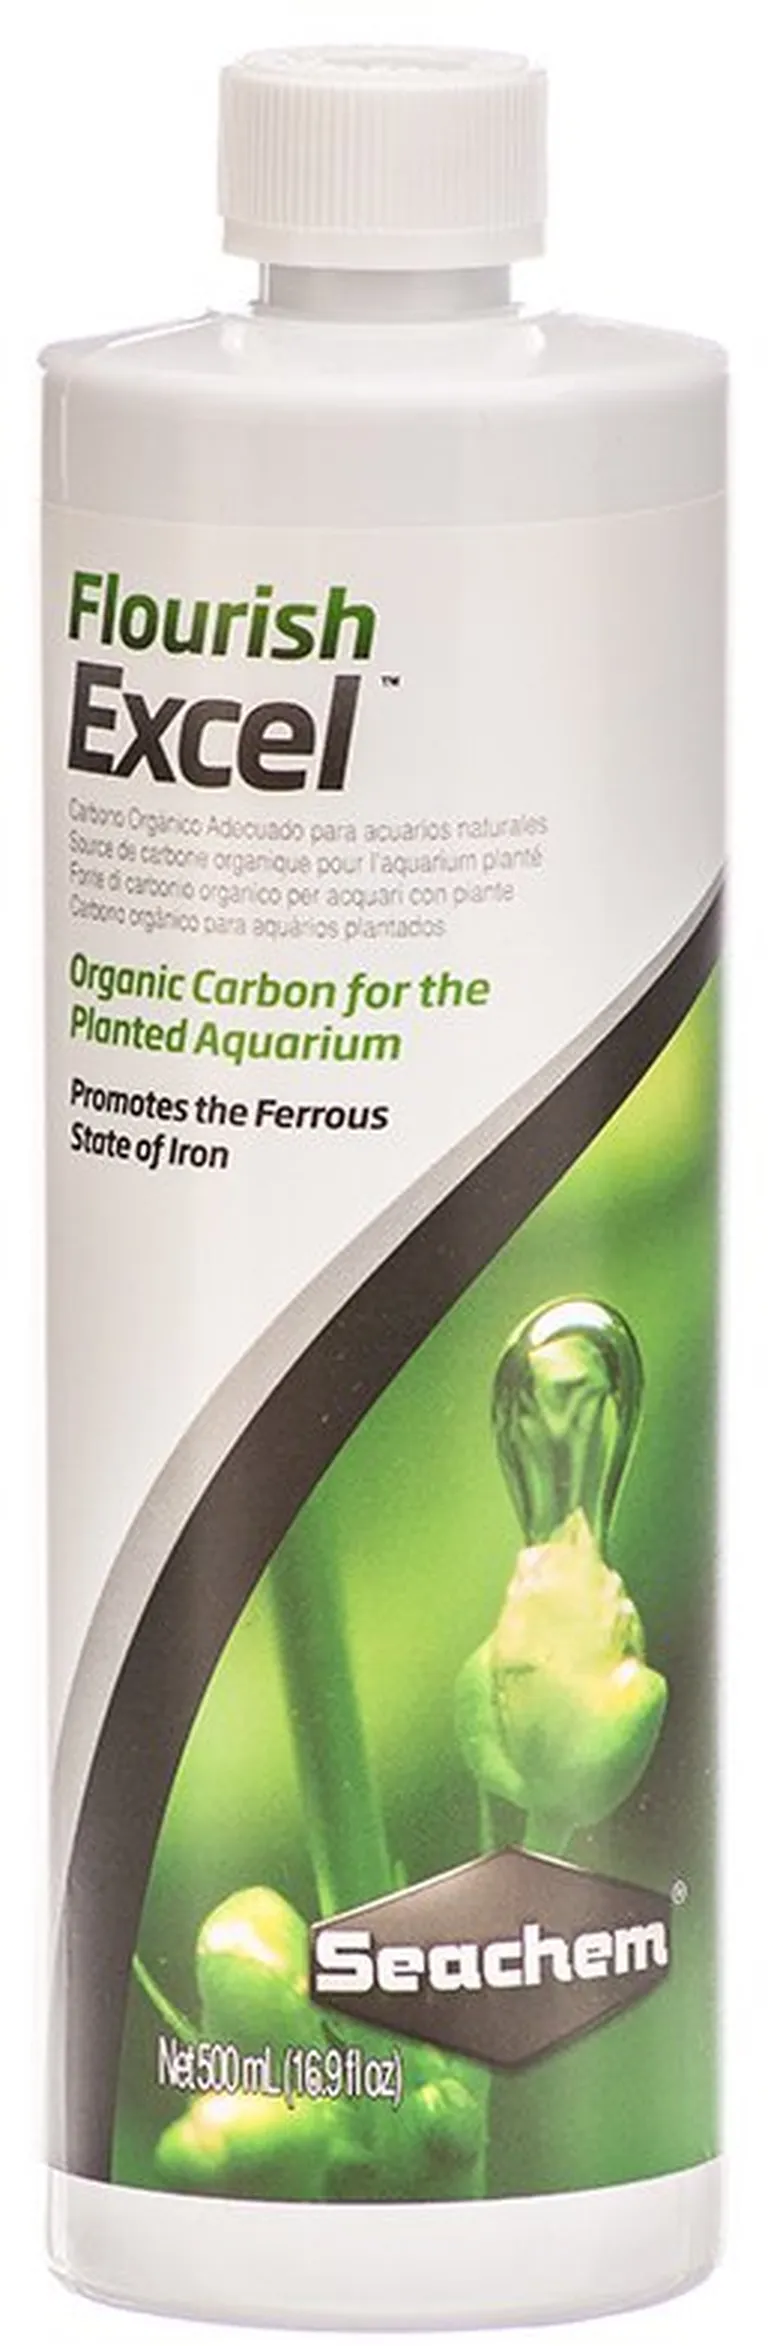 Seachem Flourish Excel Organic Carbon for the Planted Aquarium Promotes Ferrous State of Iron Photo 1